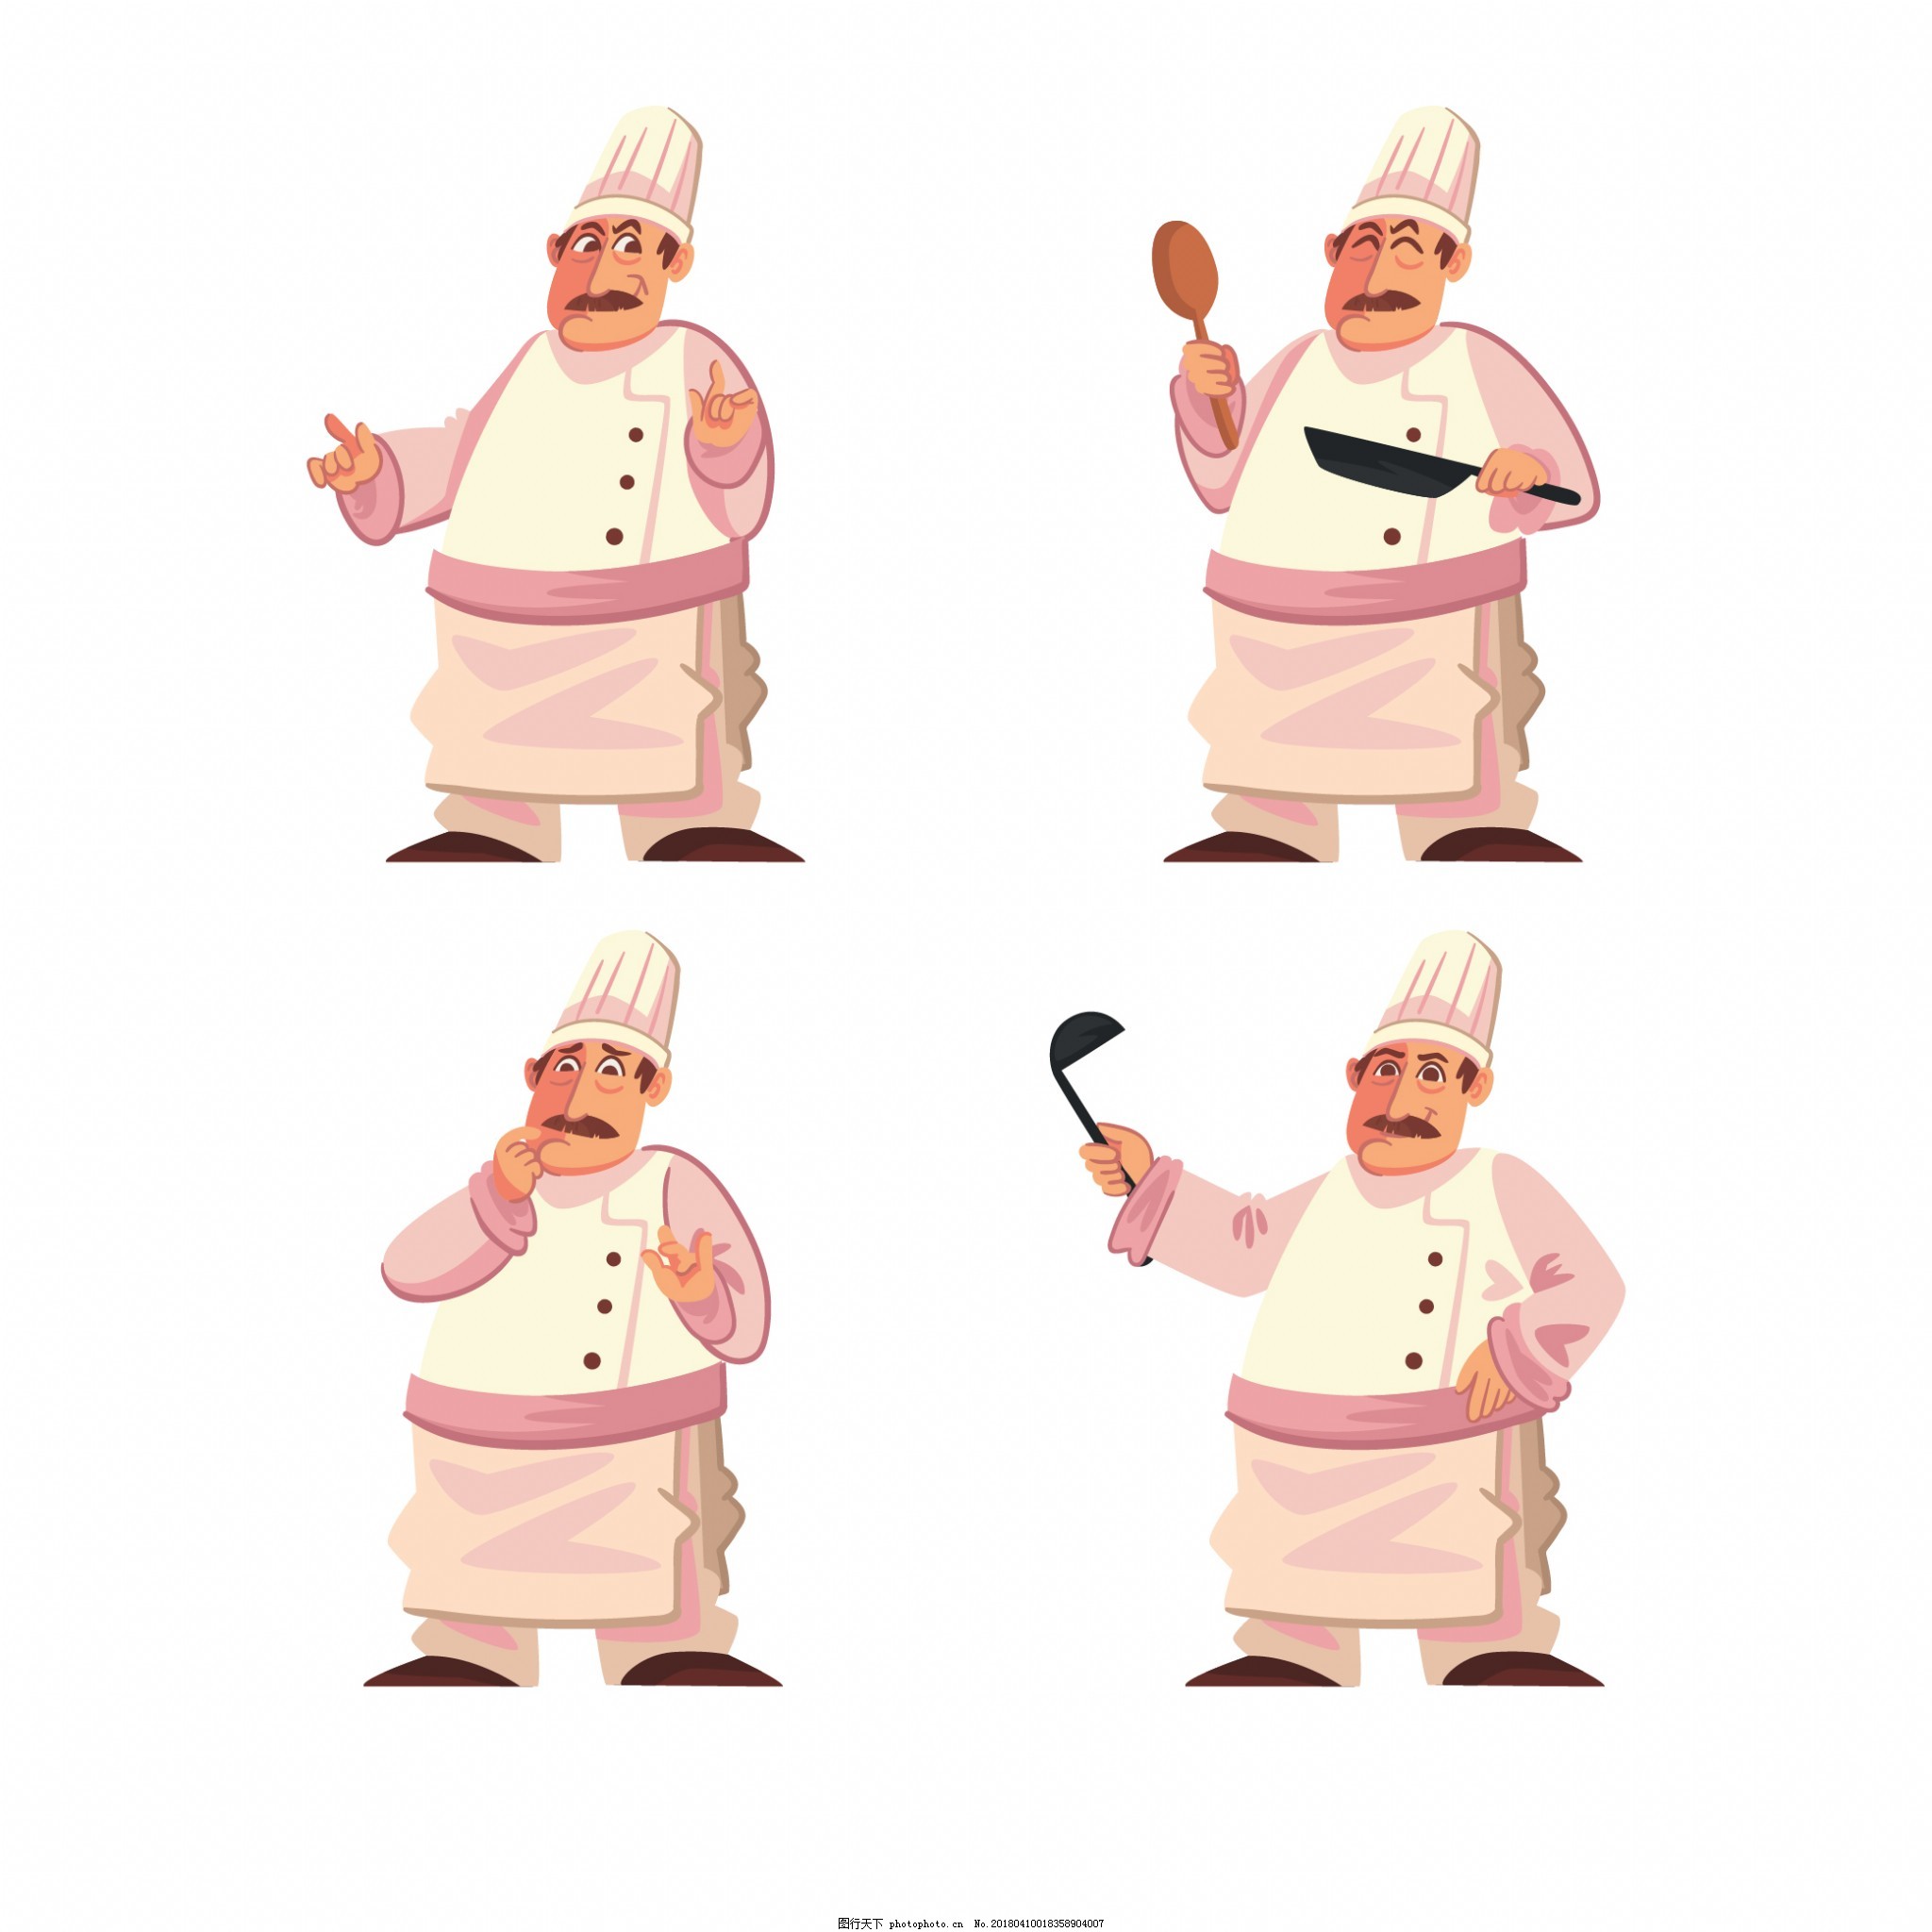 幽默开心的厨师卡通矢量免费下载图片素材免费下载 - 觅知网